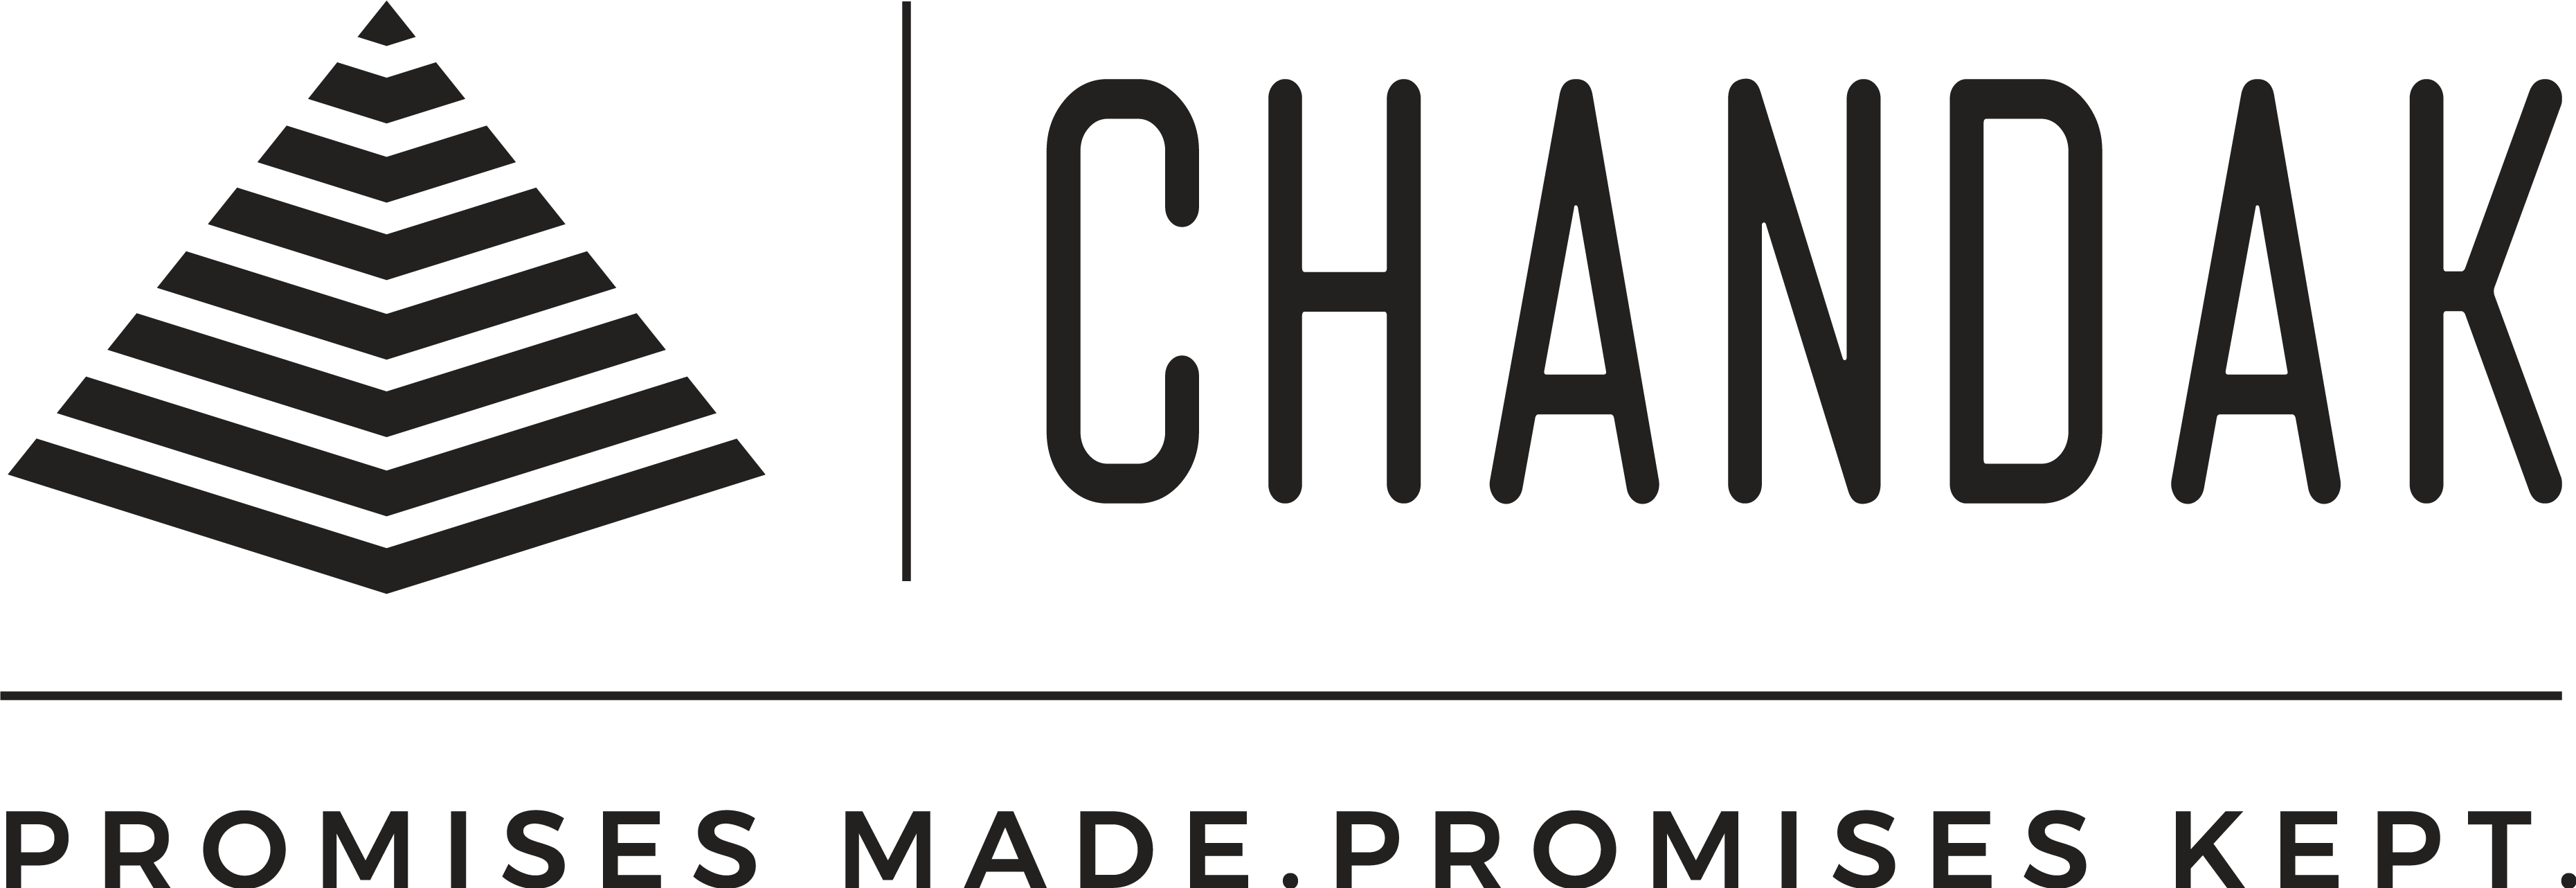 chandak group logo